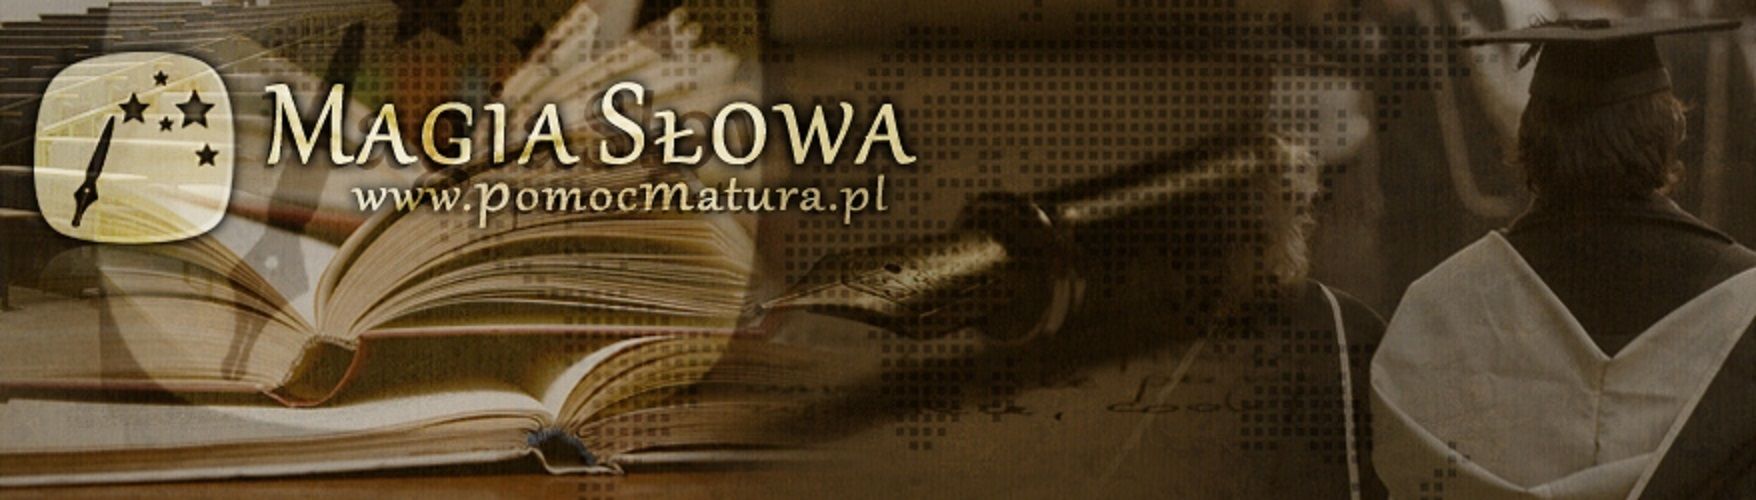 Prace dyplomowe referaty eseje zadania szkolne - ekspres bez zal. legalna firma Wrocław - Zdjęcie 1